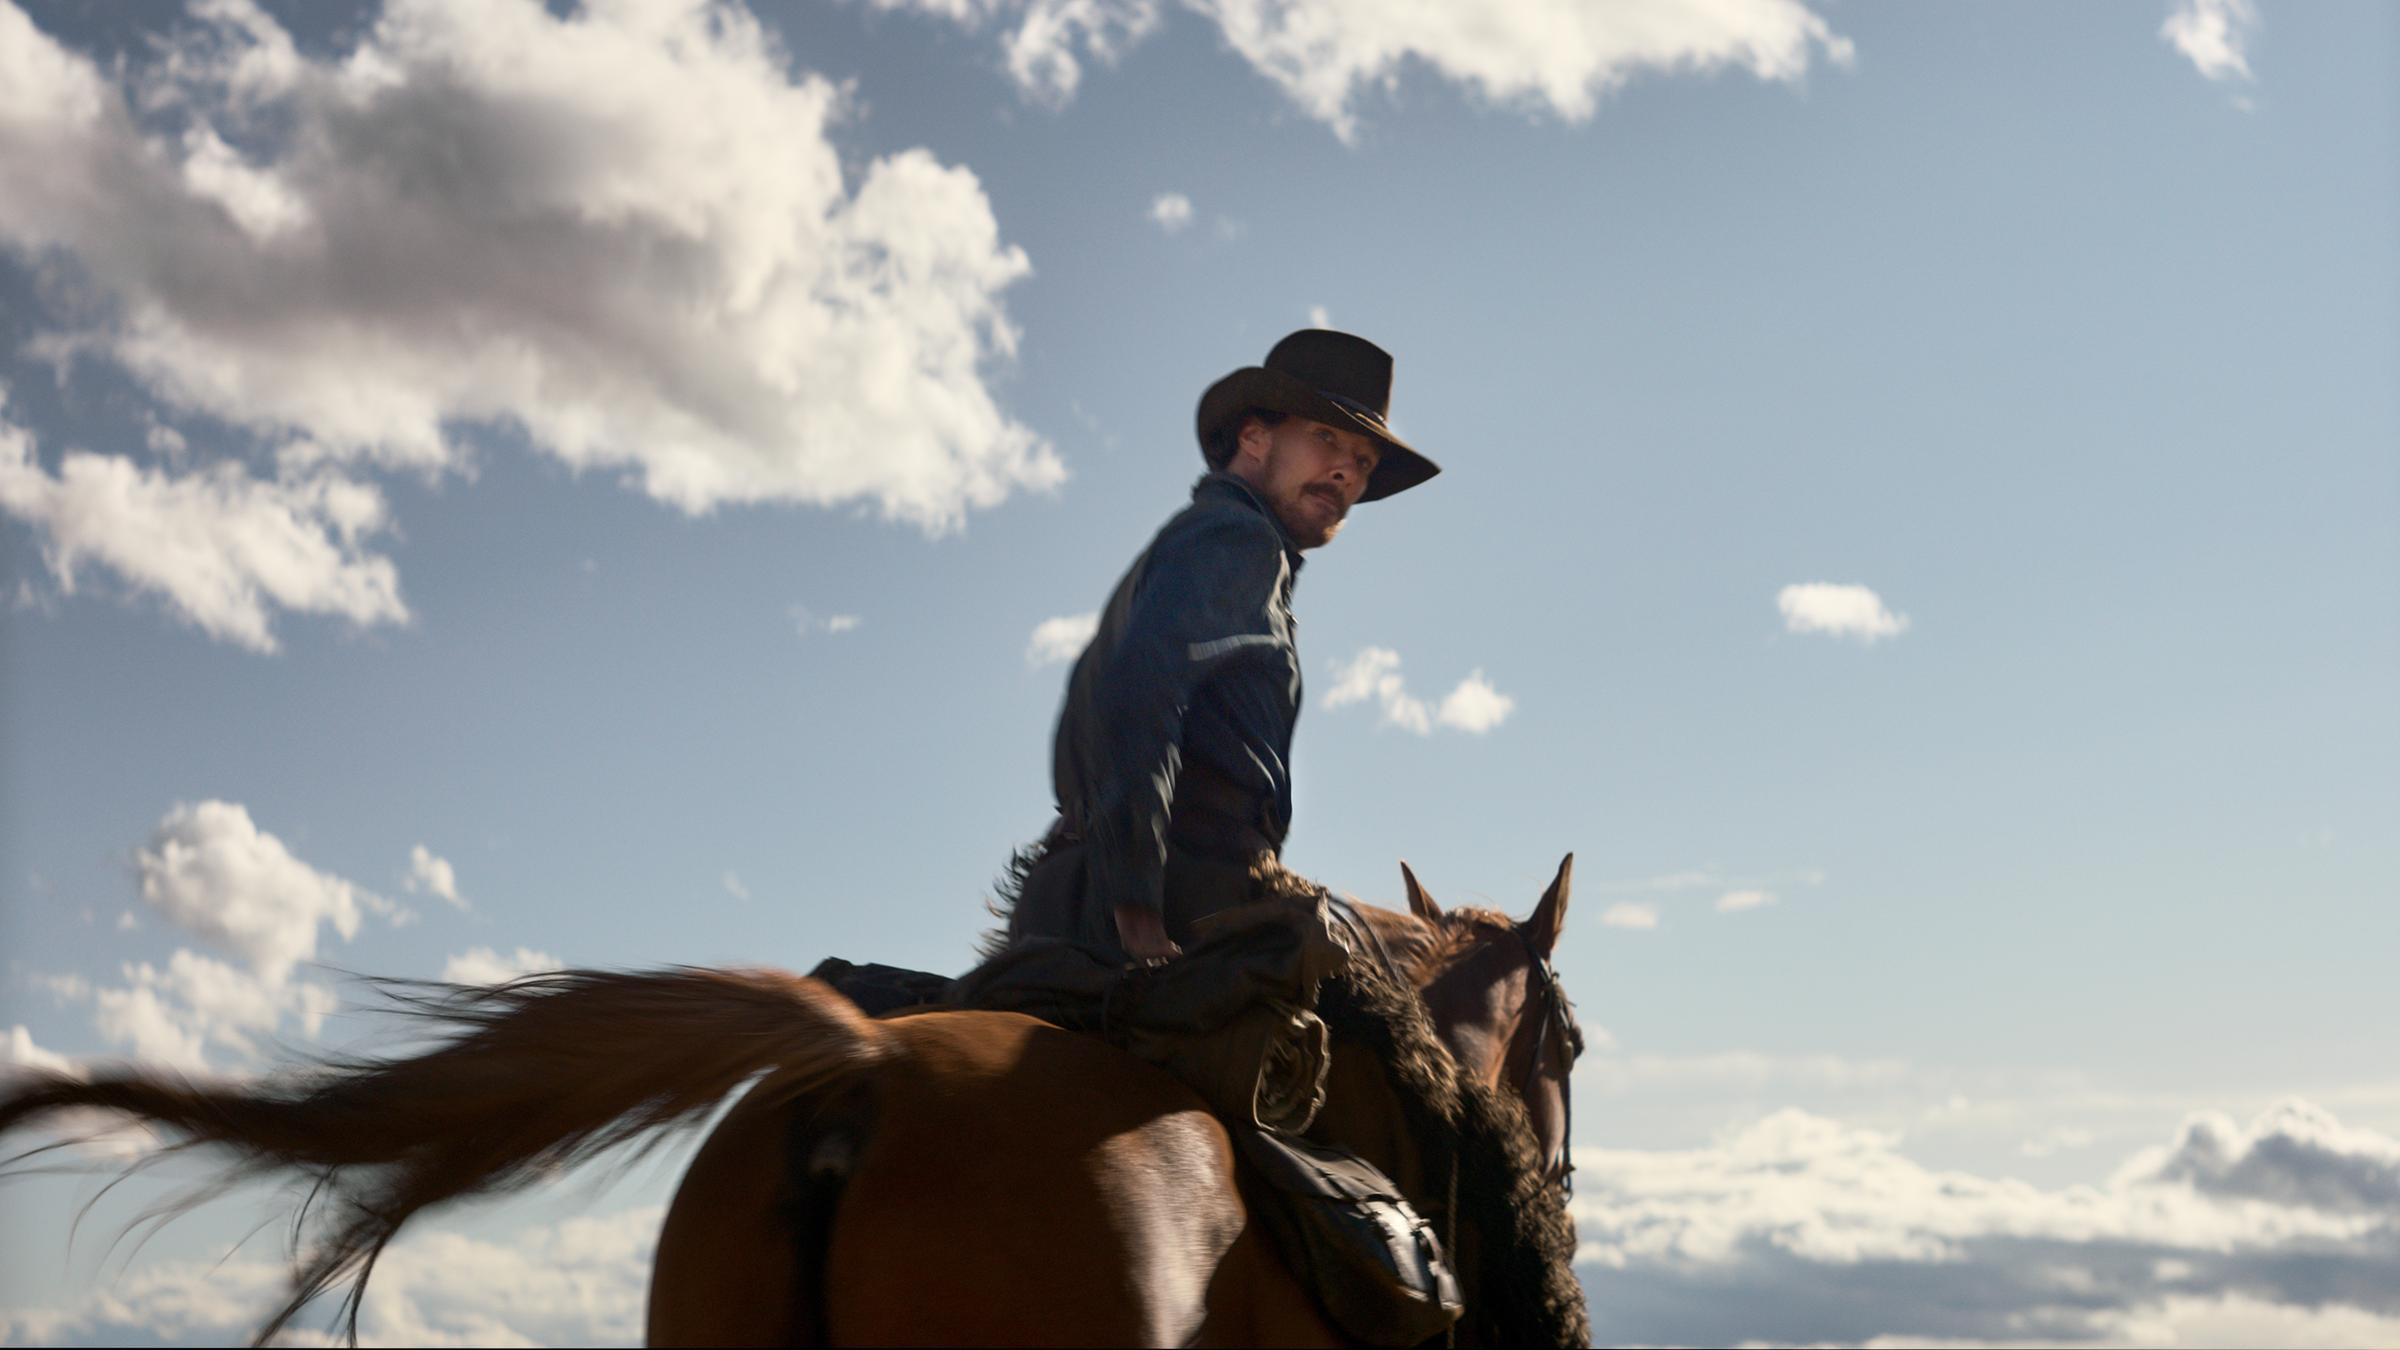 Filmszene aus dem Western "The Power of the Dog". Zu sehen ist der Hauptdarsteller Benedict Cumberbatch auf eine Pferd sitzend.